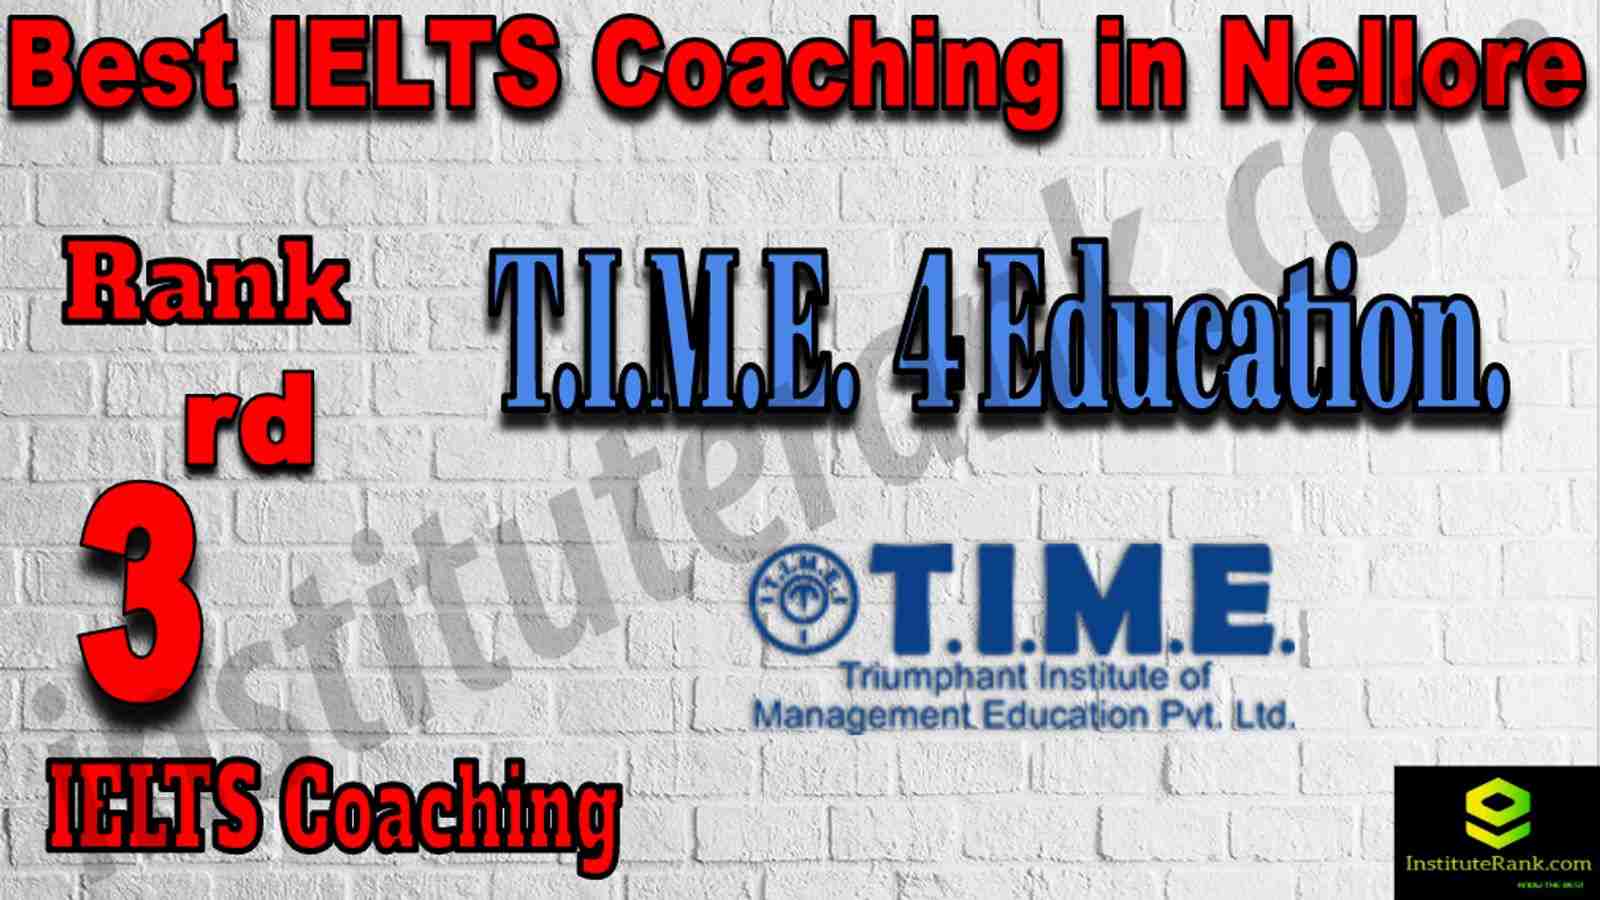 3rd Best IELTS Coaching in Nellore